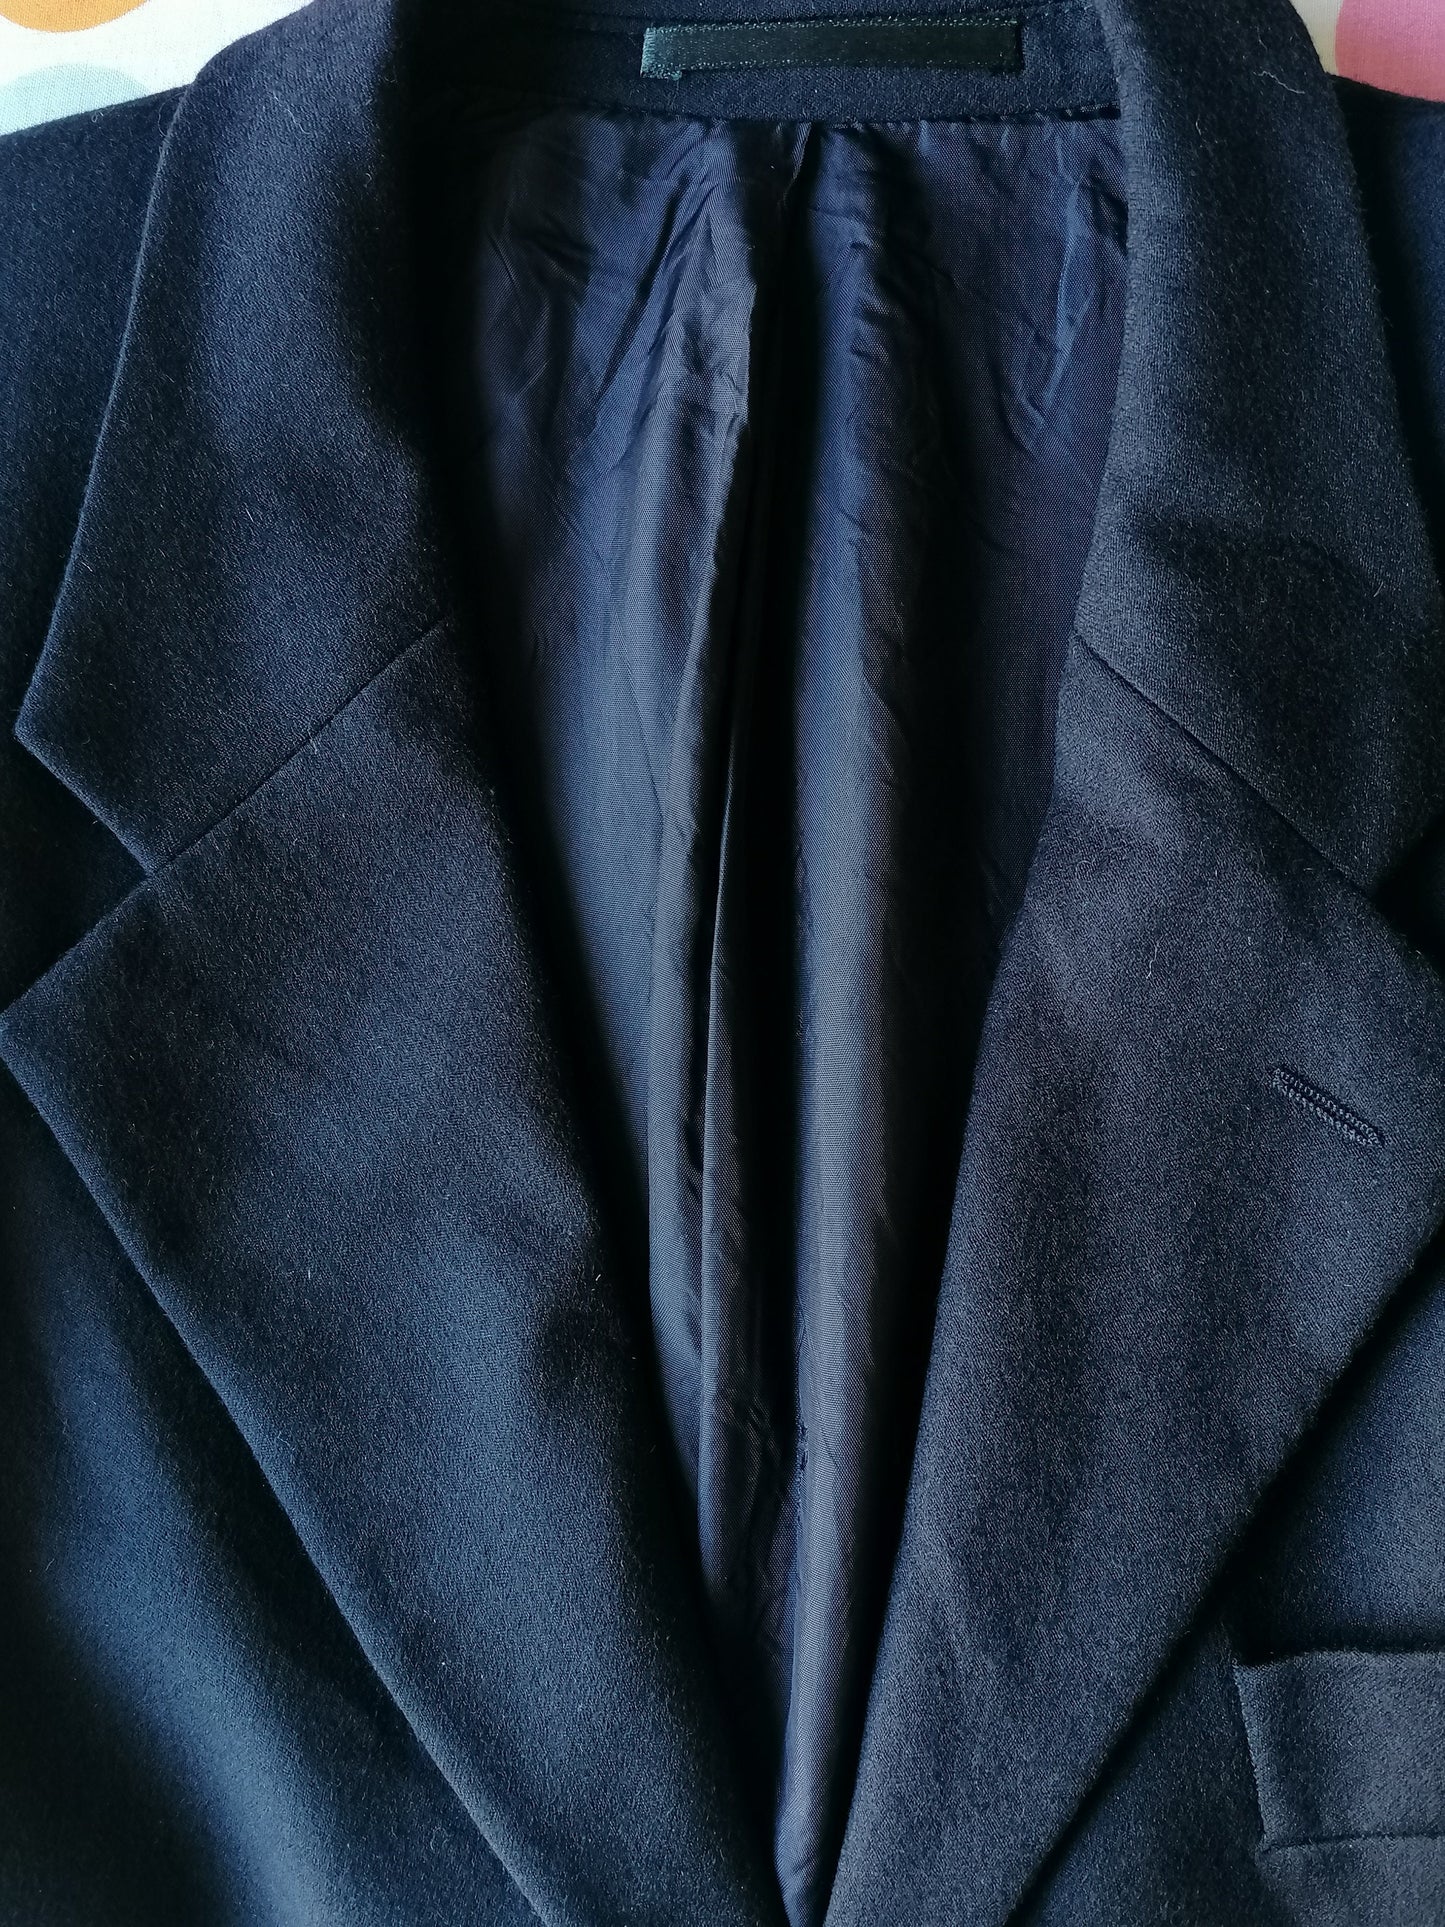 Giacca di lana vintage londrair. Blu scuro colorato. Dimensioni 50 / M.